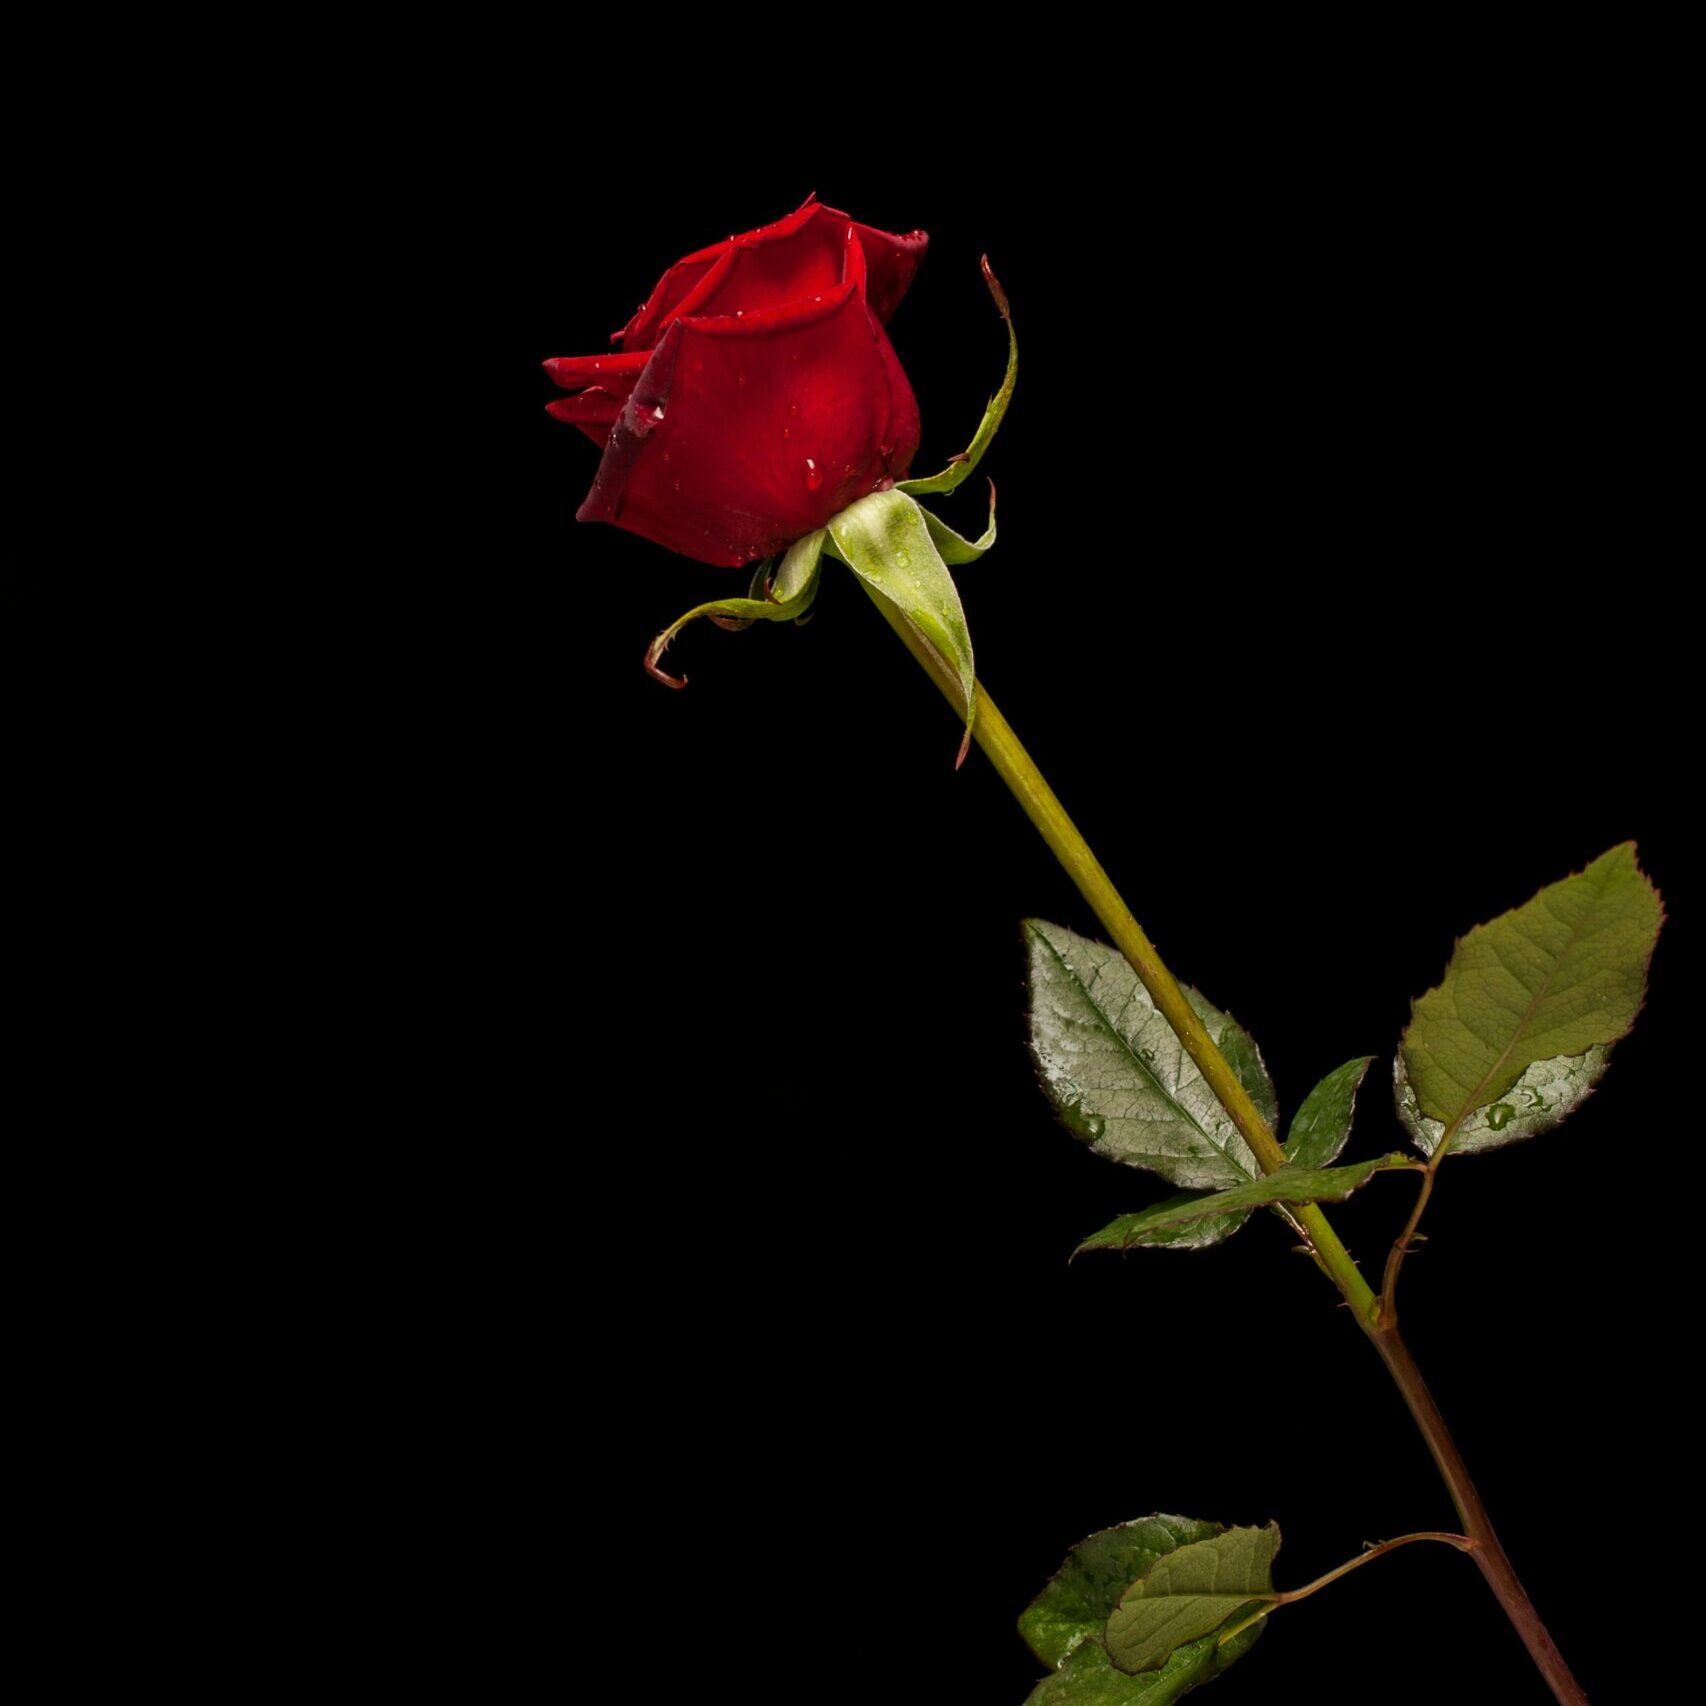 Rote Rose auf schwarzem Hintergrund